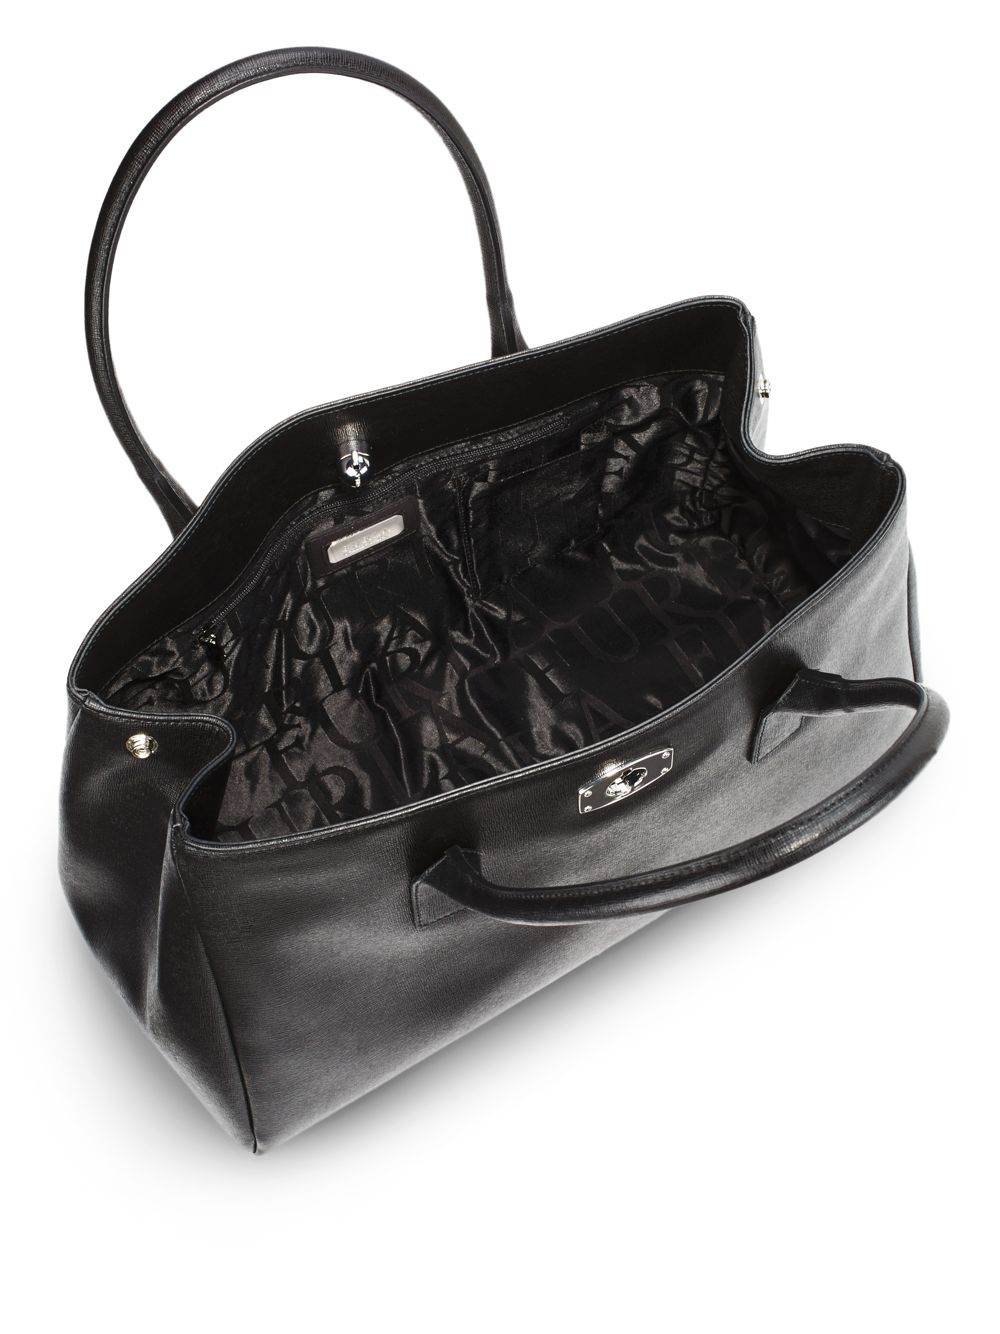 Furla - Ariana Large Saffiano Leather Shopping Tote Black